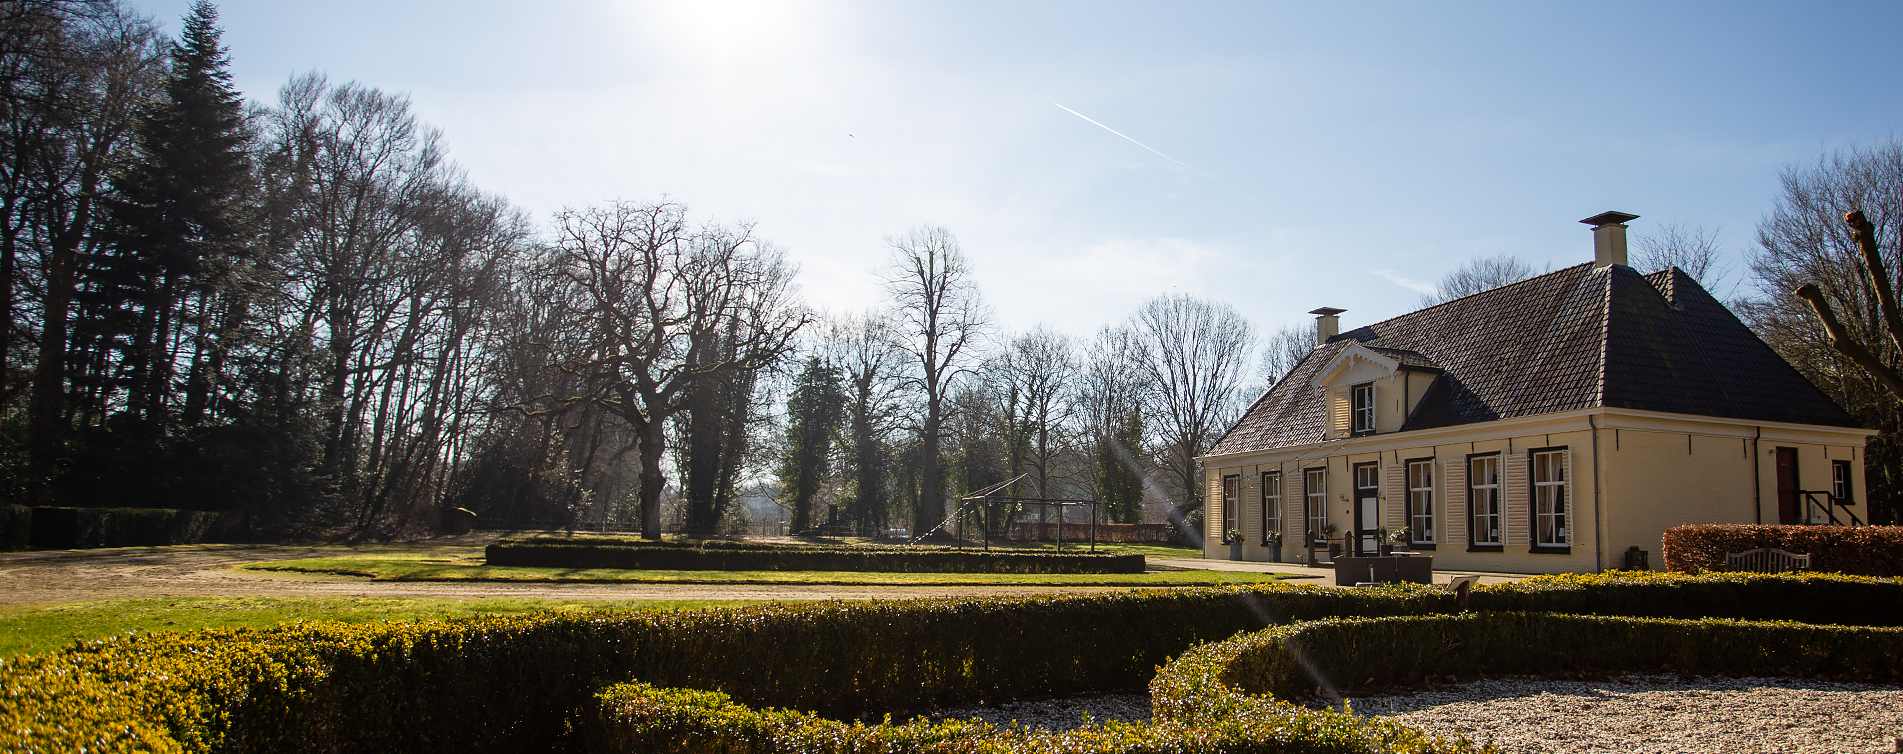 Landhuis met tuin in Paterswolde - Ahorn Verzekeringen